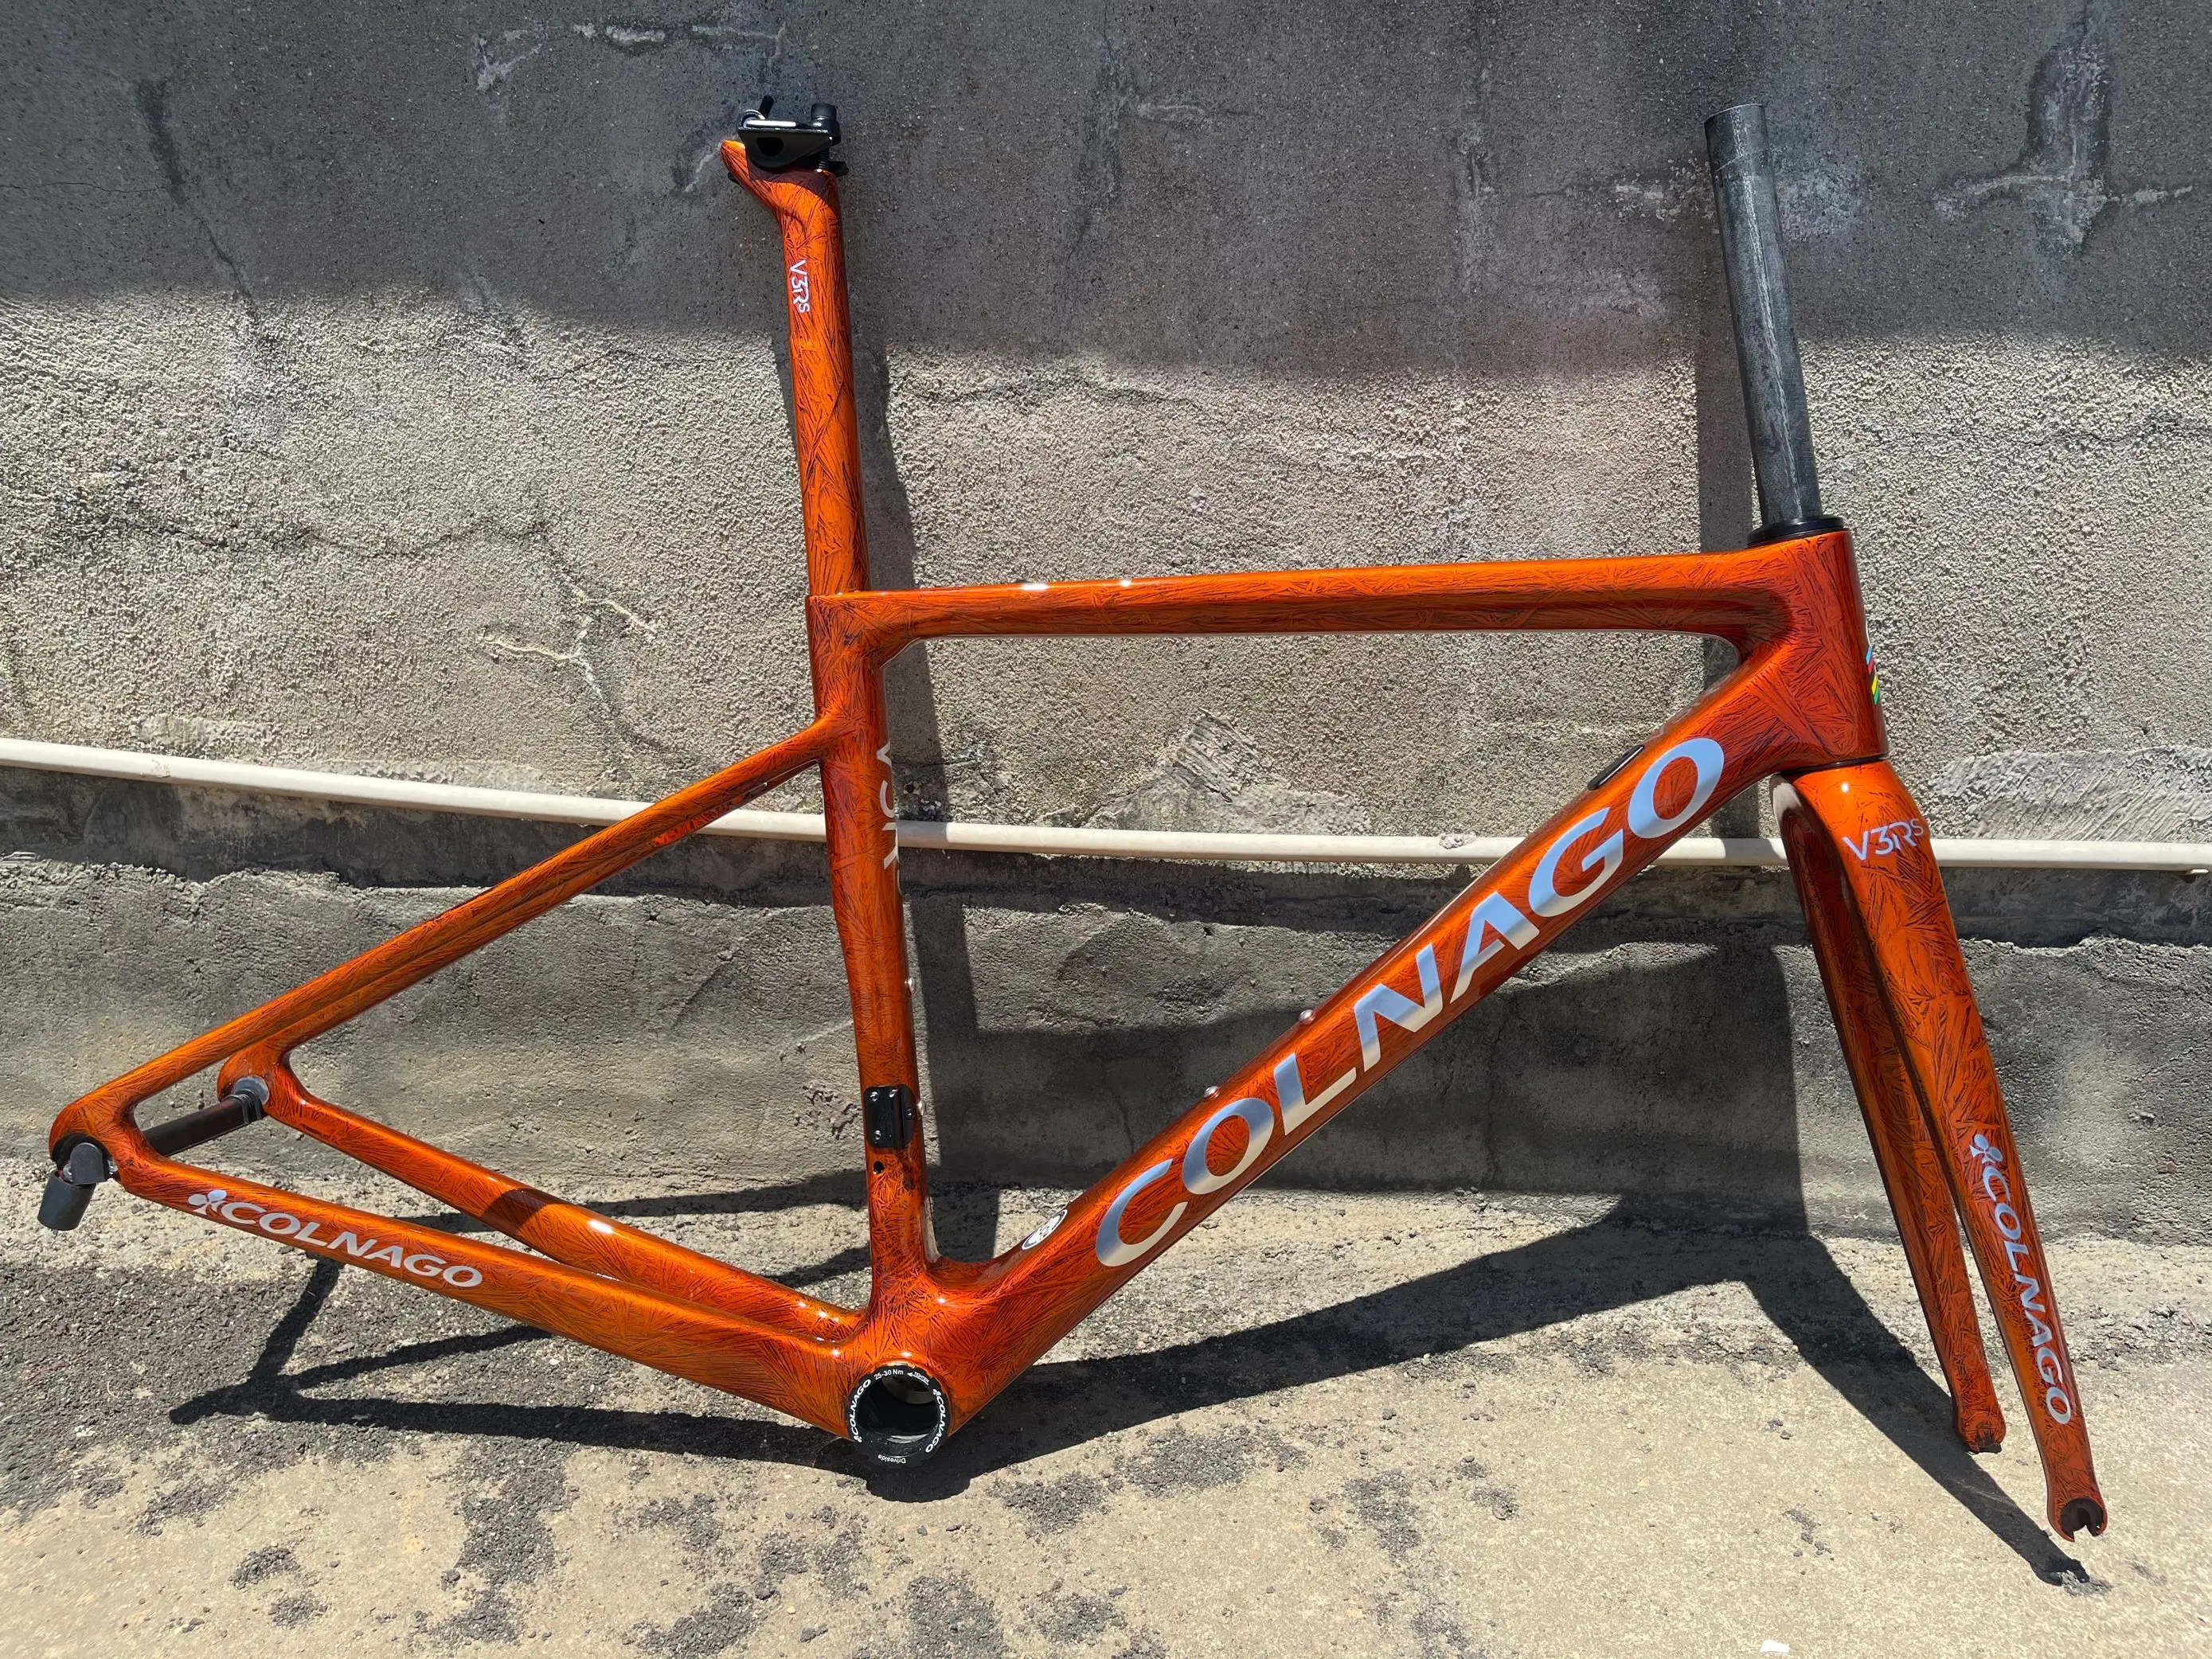 Cuadro de bicicleta de carretera de carbono de Color naranja congelado 2022 V3RS: Marco + horquilla + poste de asiento + auriculares + abrazadera, personalización de Color